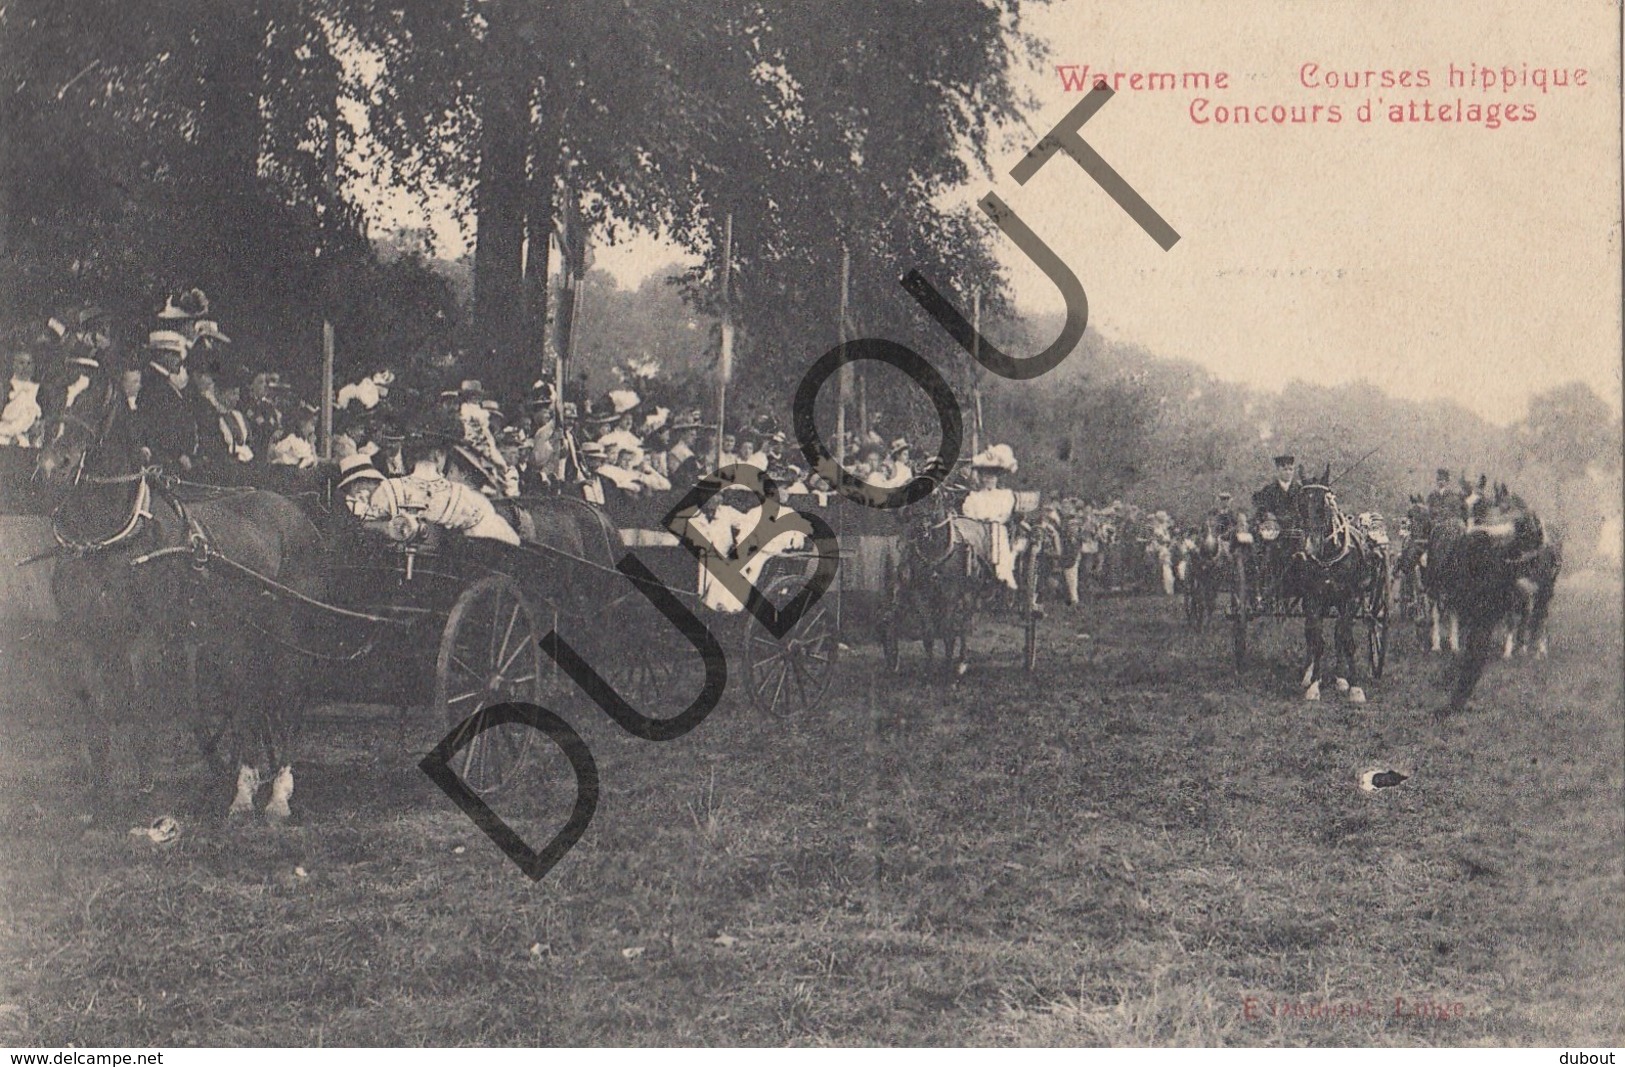 Postkaart - Carte Postale BORGWORM/WAREMME Courses Hippiques-Paarden/Chevaux Concours D'attelages (O21) - Waremme